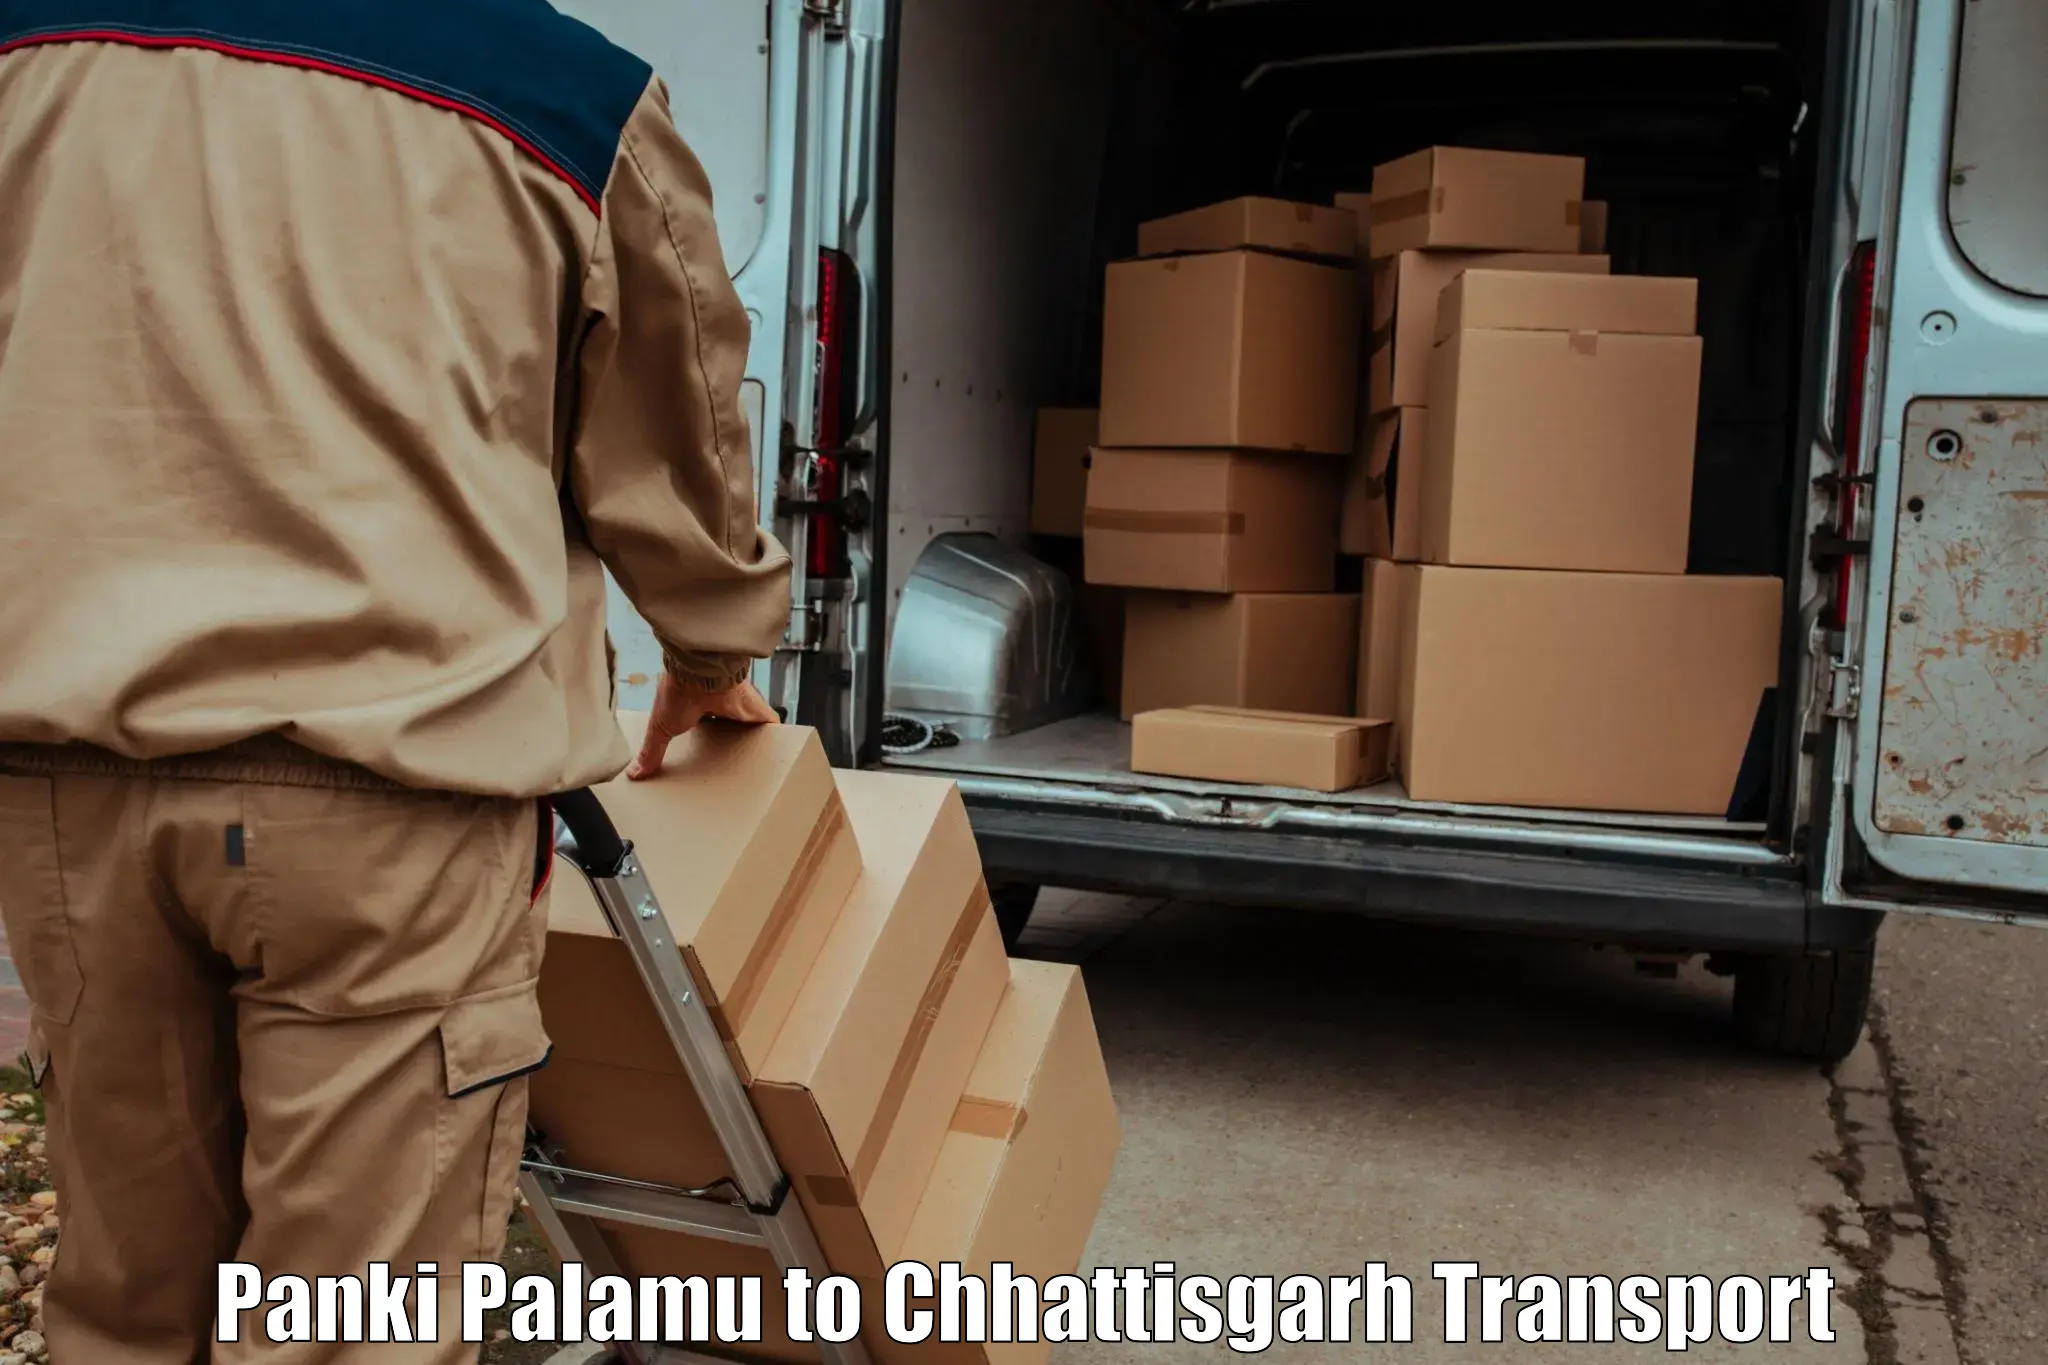 Shipping partner in Panki Palamu to Jashpur